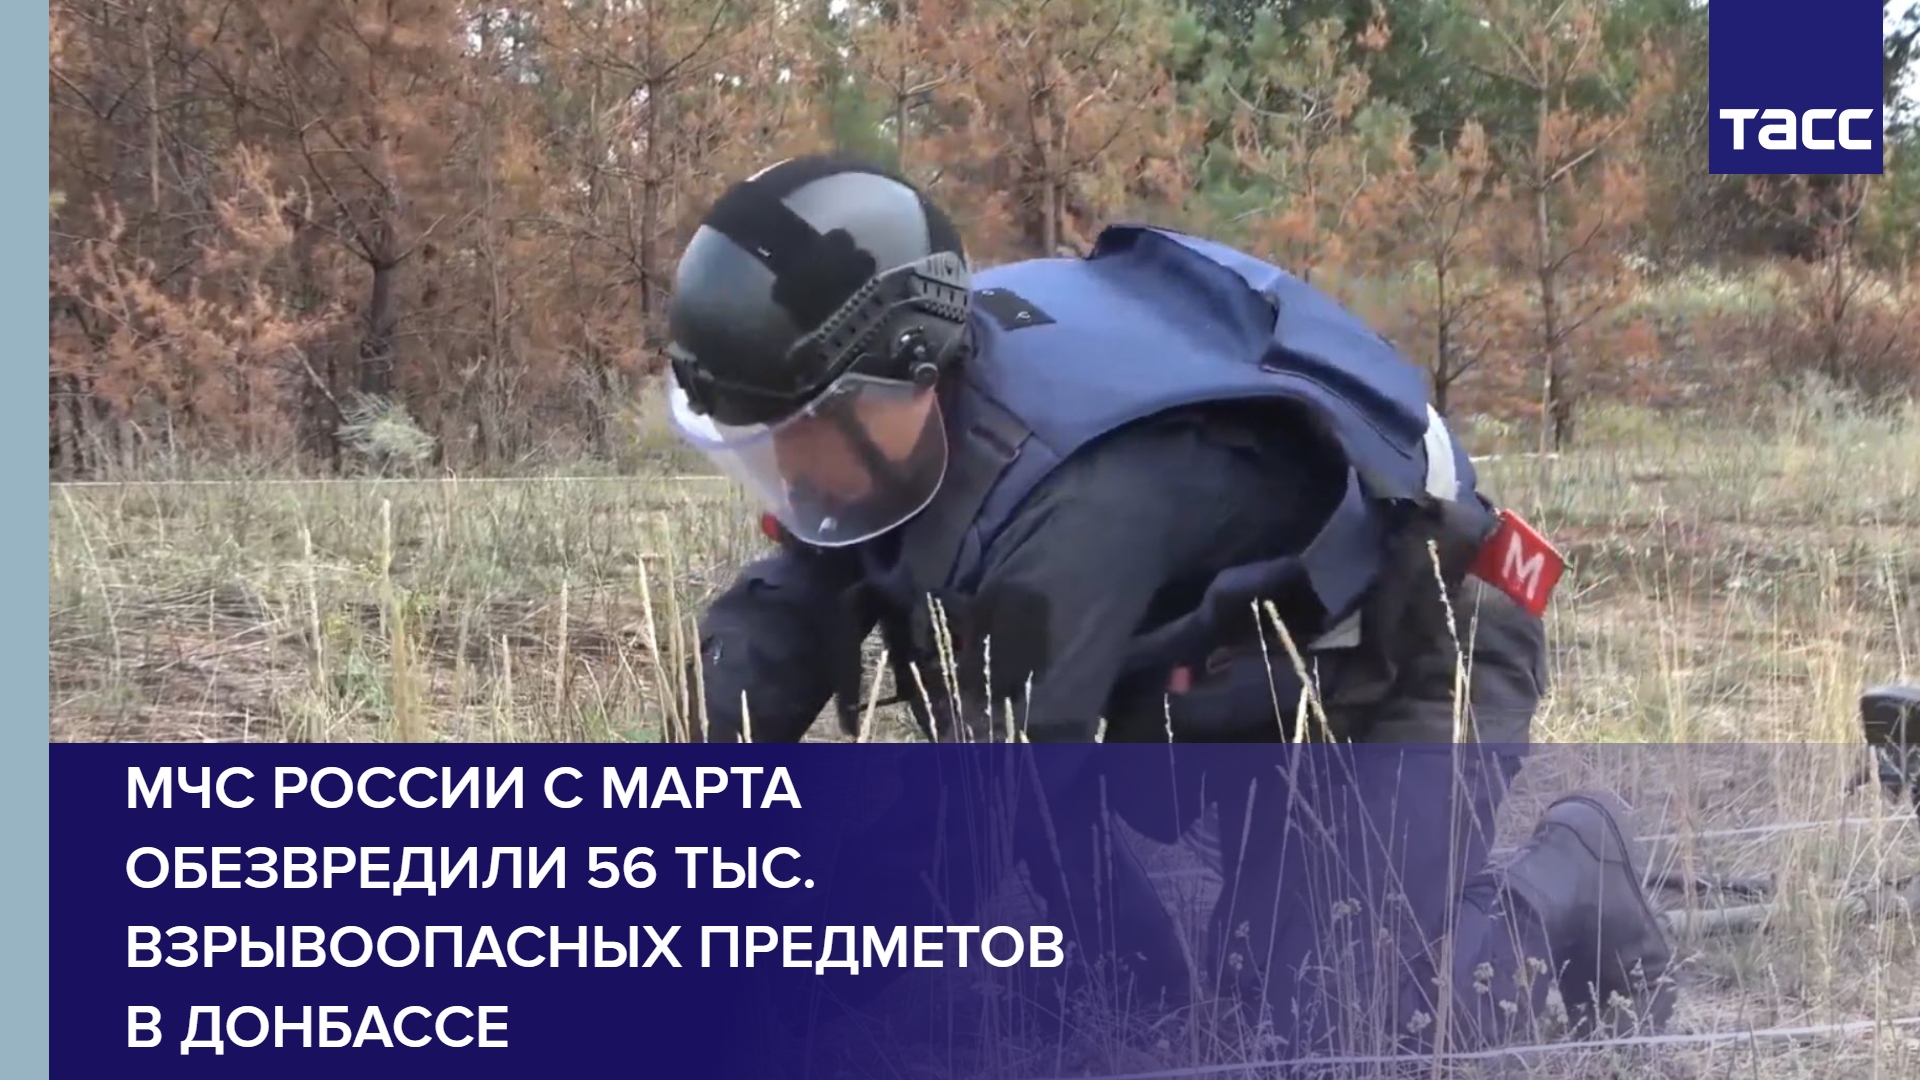 МЧС России с марта обезвредили 56 тыс. взрывоопасных предметов в Донбассе